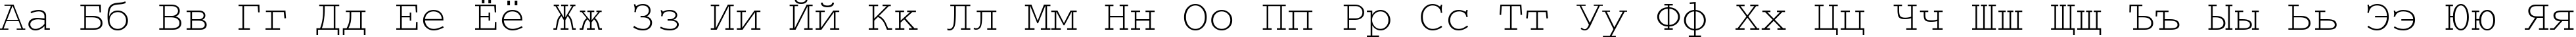 Пример написания русского алфавита шрифтом CourierTT